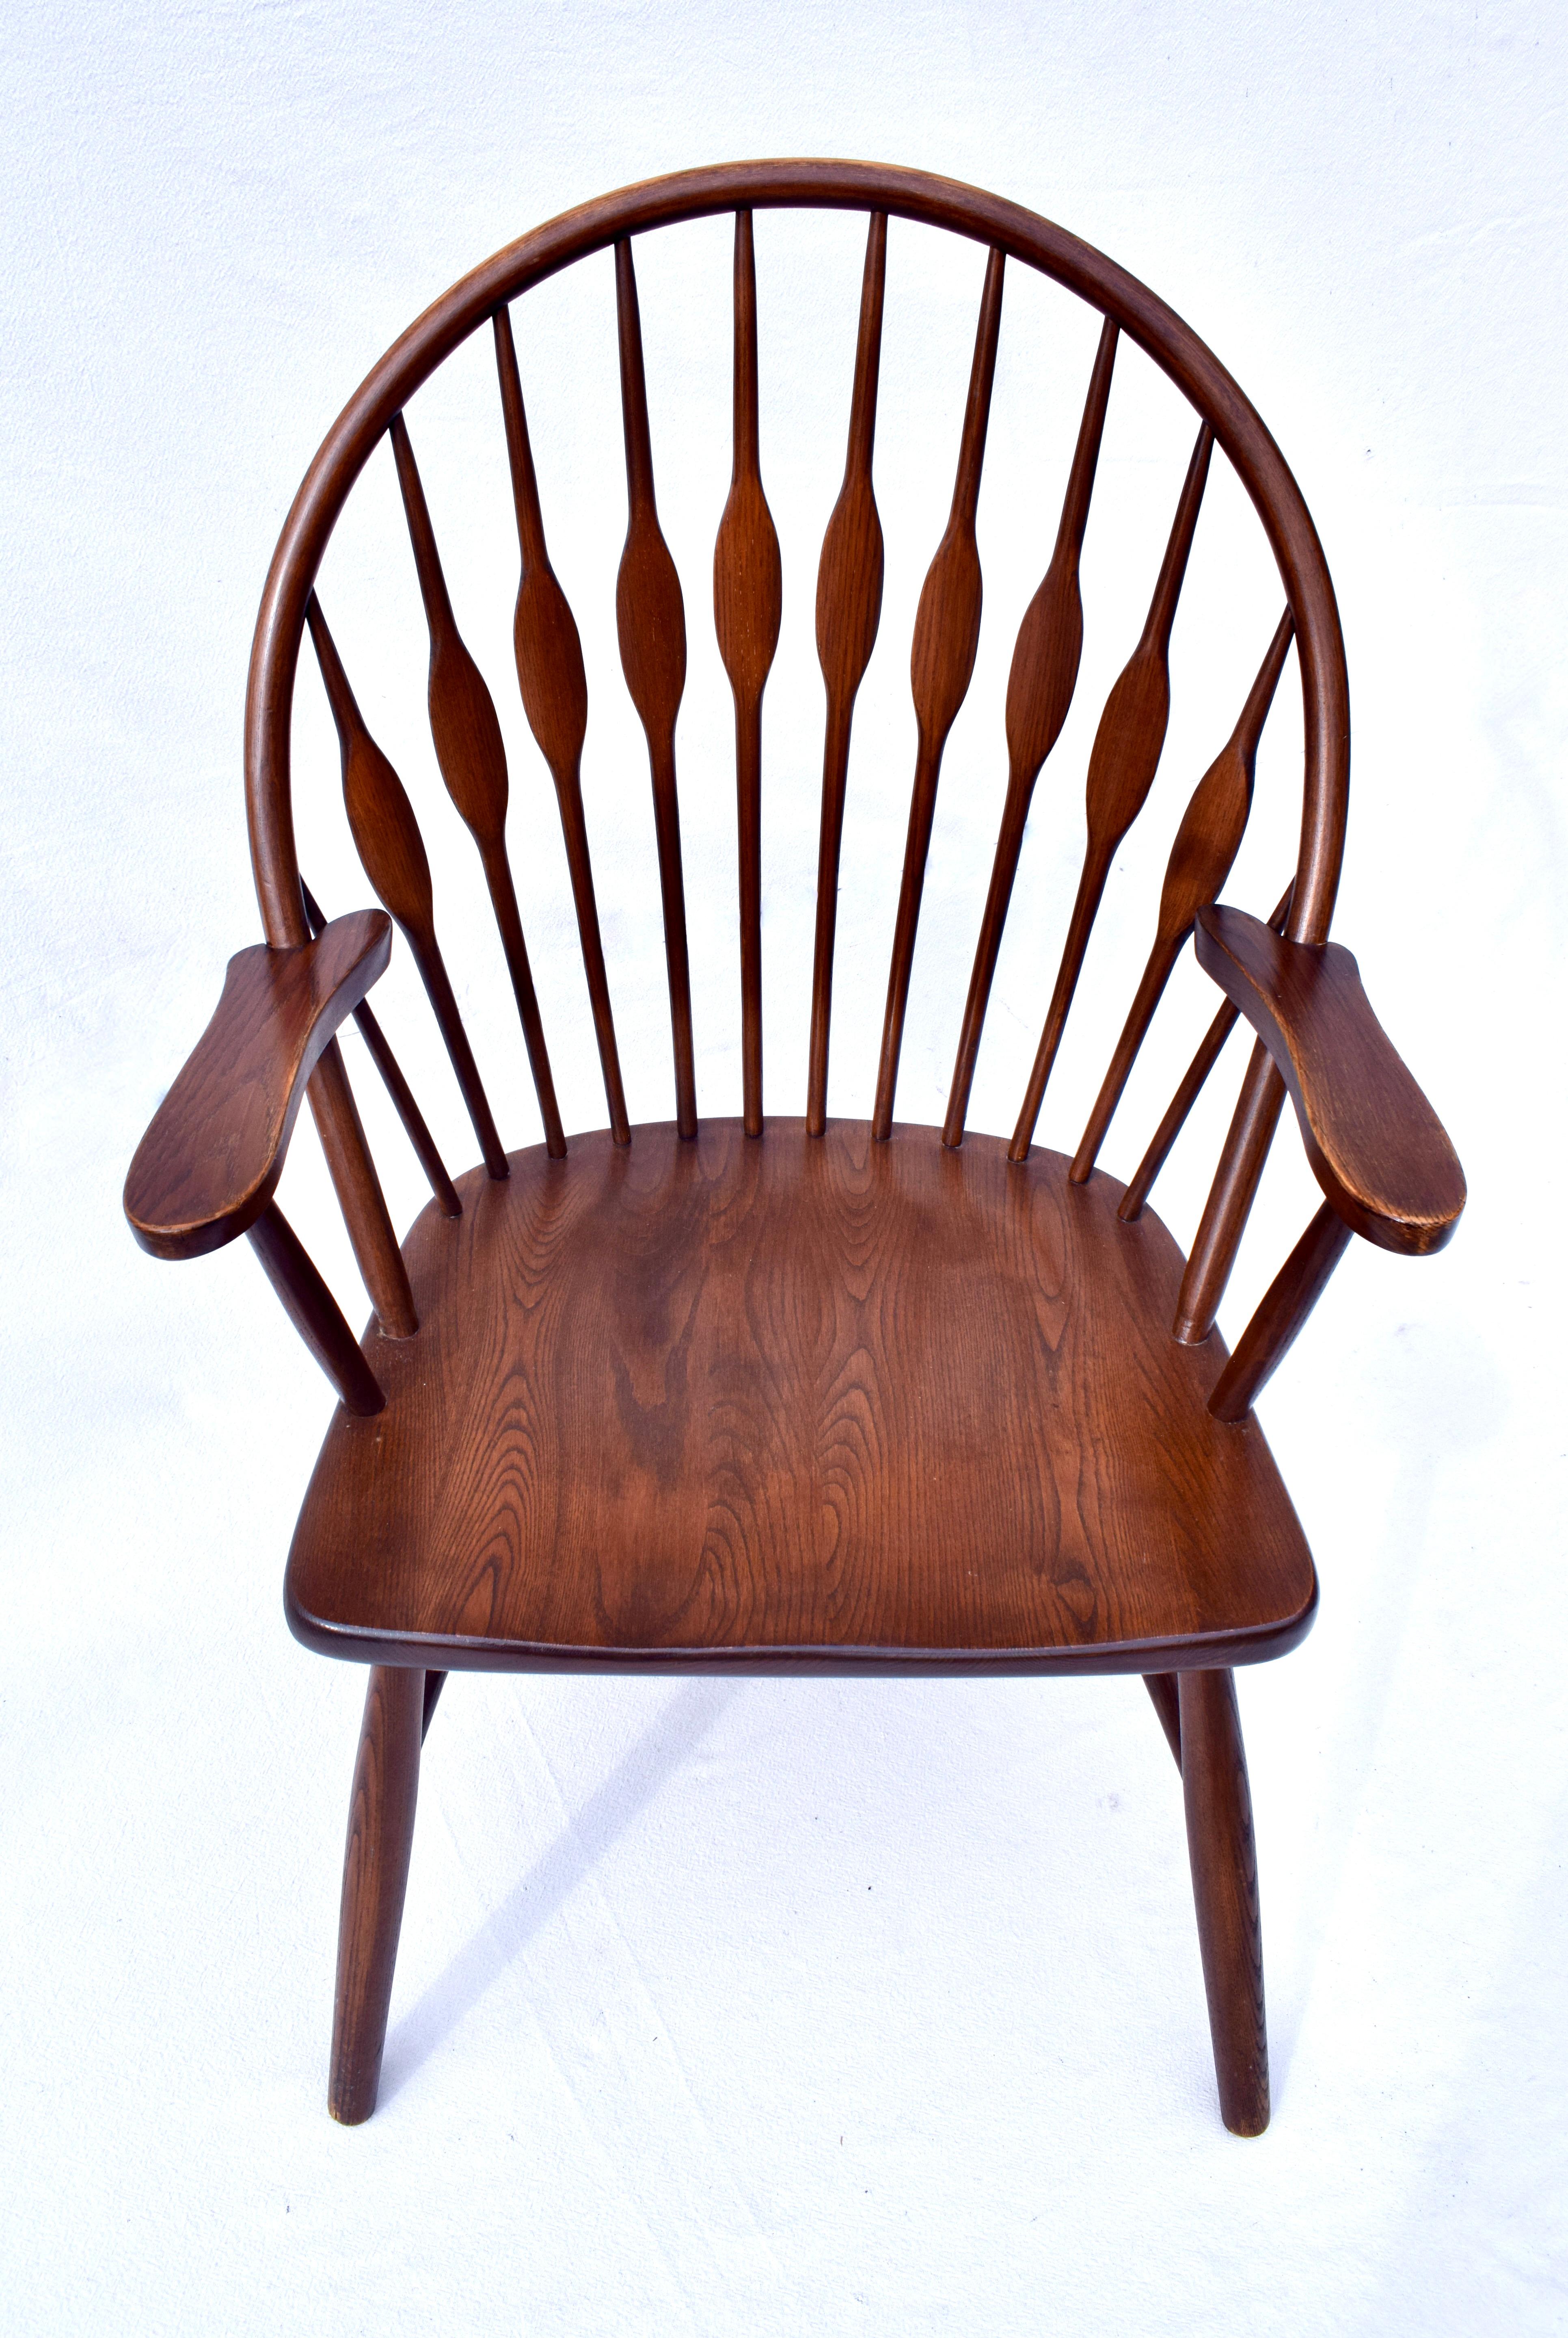 Paire de chaises Windsor en bois courbé de la société FW Lombard du Massachusetts, reprenant le style unique de la chaise Peacock de Hans Wegner, datant du milieu du siècle dernier. Élégant, solide et extrêmement confortable. Chaque chaise porte